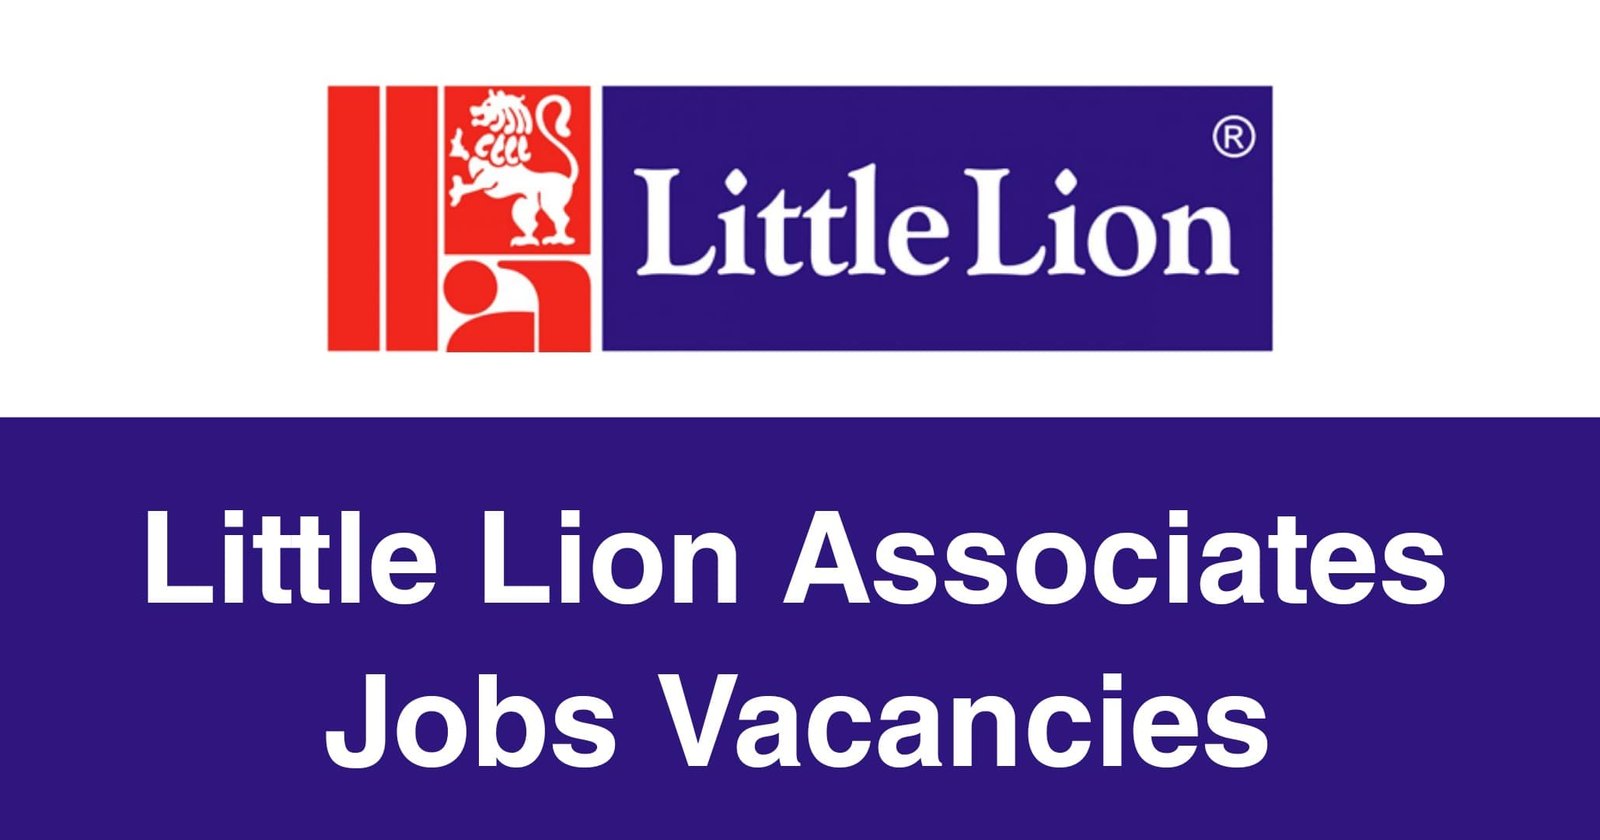 Little Lion Associates Jobs Vacancies